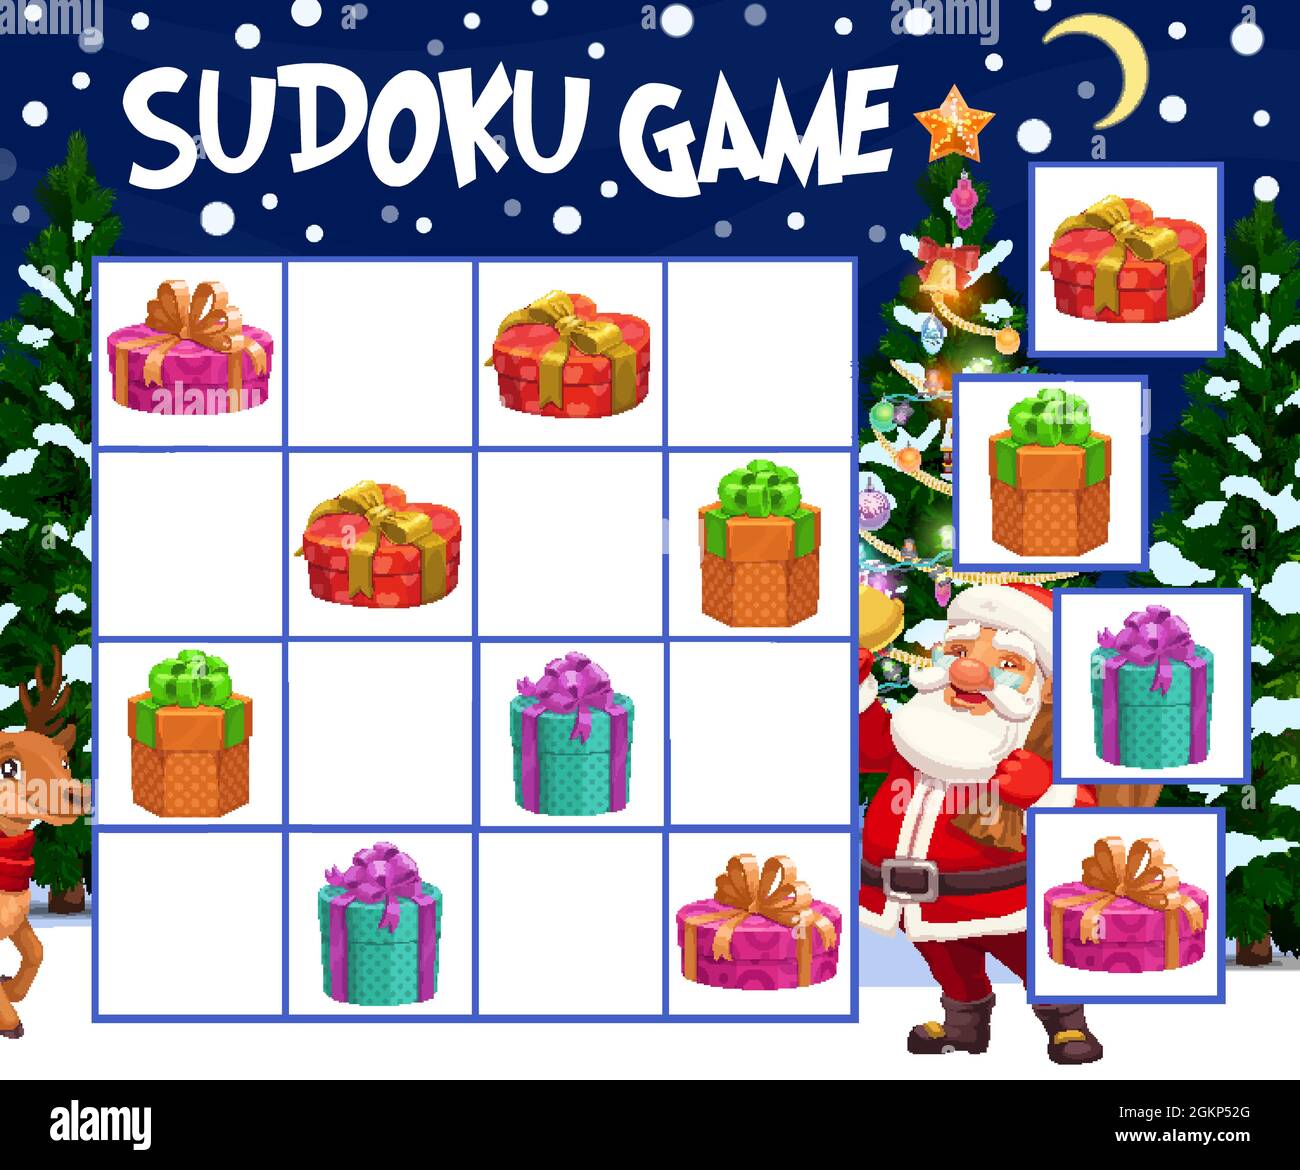 Kinder Sudoku Spiel mit Weihnachtsgeschenke Boxen. Kind Winterferien Rätsel,  Kinder Puzzle Labyrinth mit eingewickelten und dekorierten Geschenke,  Weihnachtsmann und Rentier Charaktere, Weihnachtsbaum Cartoon-Vektor  Stock-Vektorgrafik - Alamy